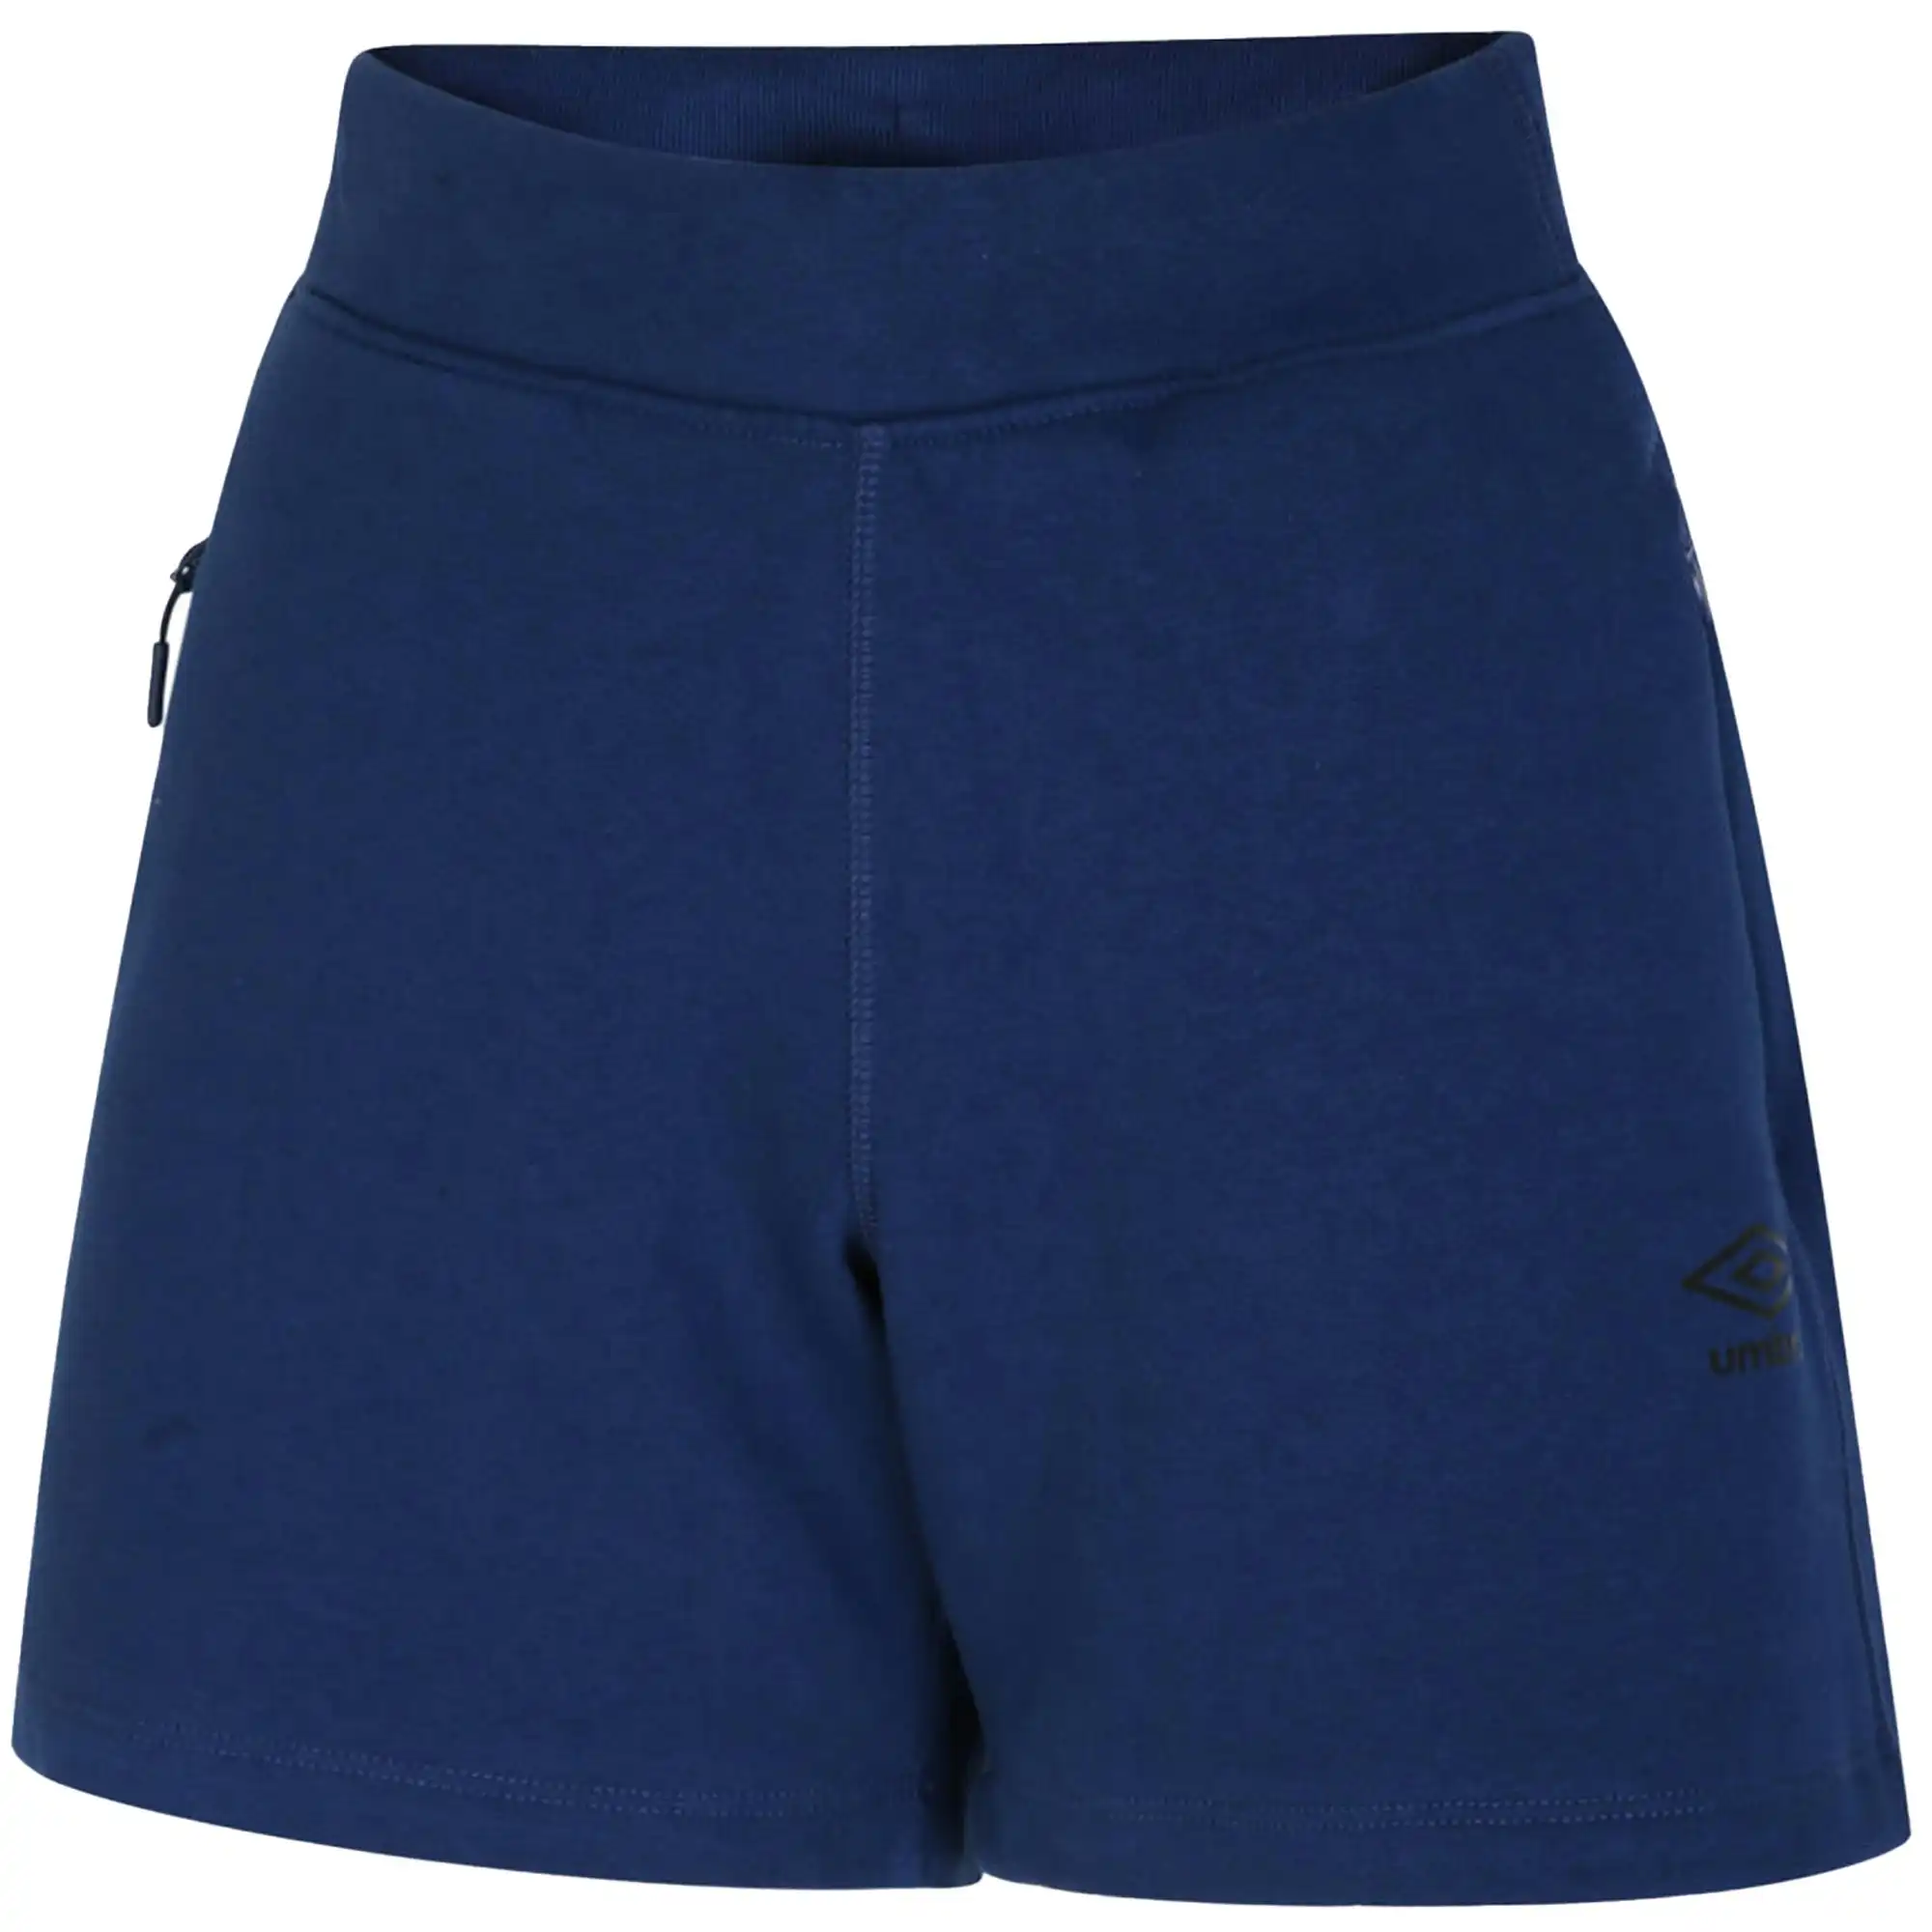 Umbro Womens/Ladies Pro Elite Fleece Shorts